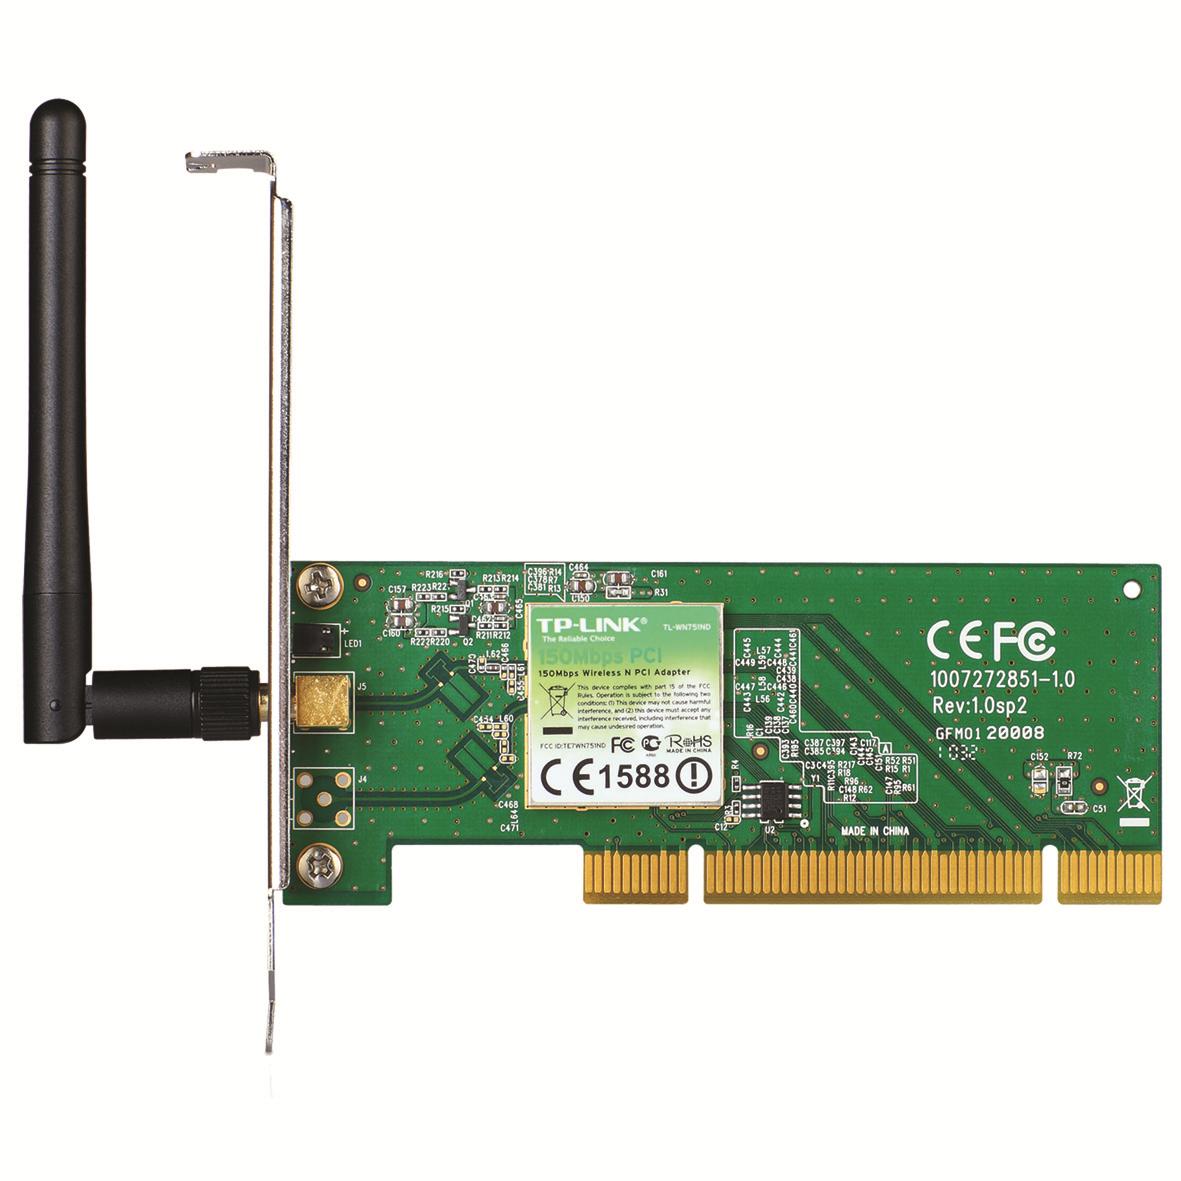 Ασύρματο TP-LINK TL-WN751ND Wireless PCI Adapter, 150Mbps